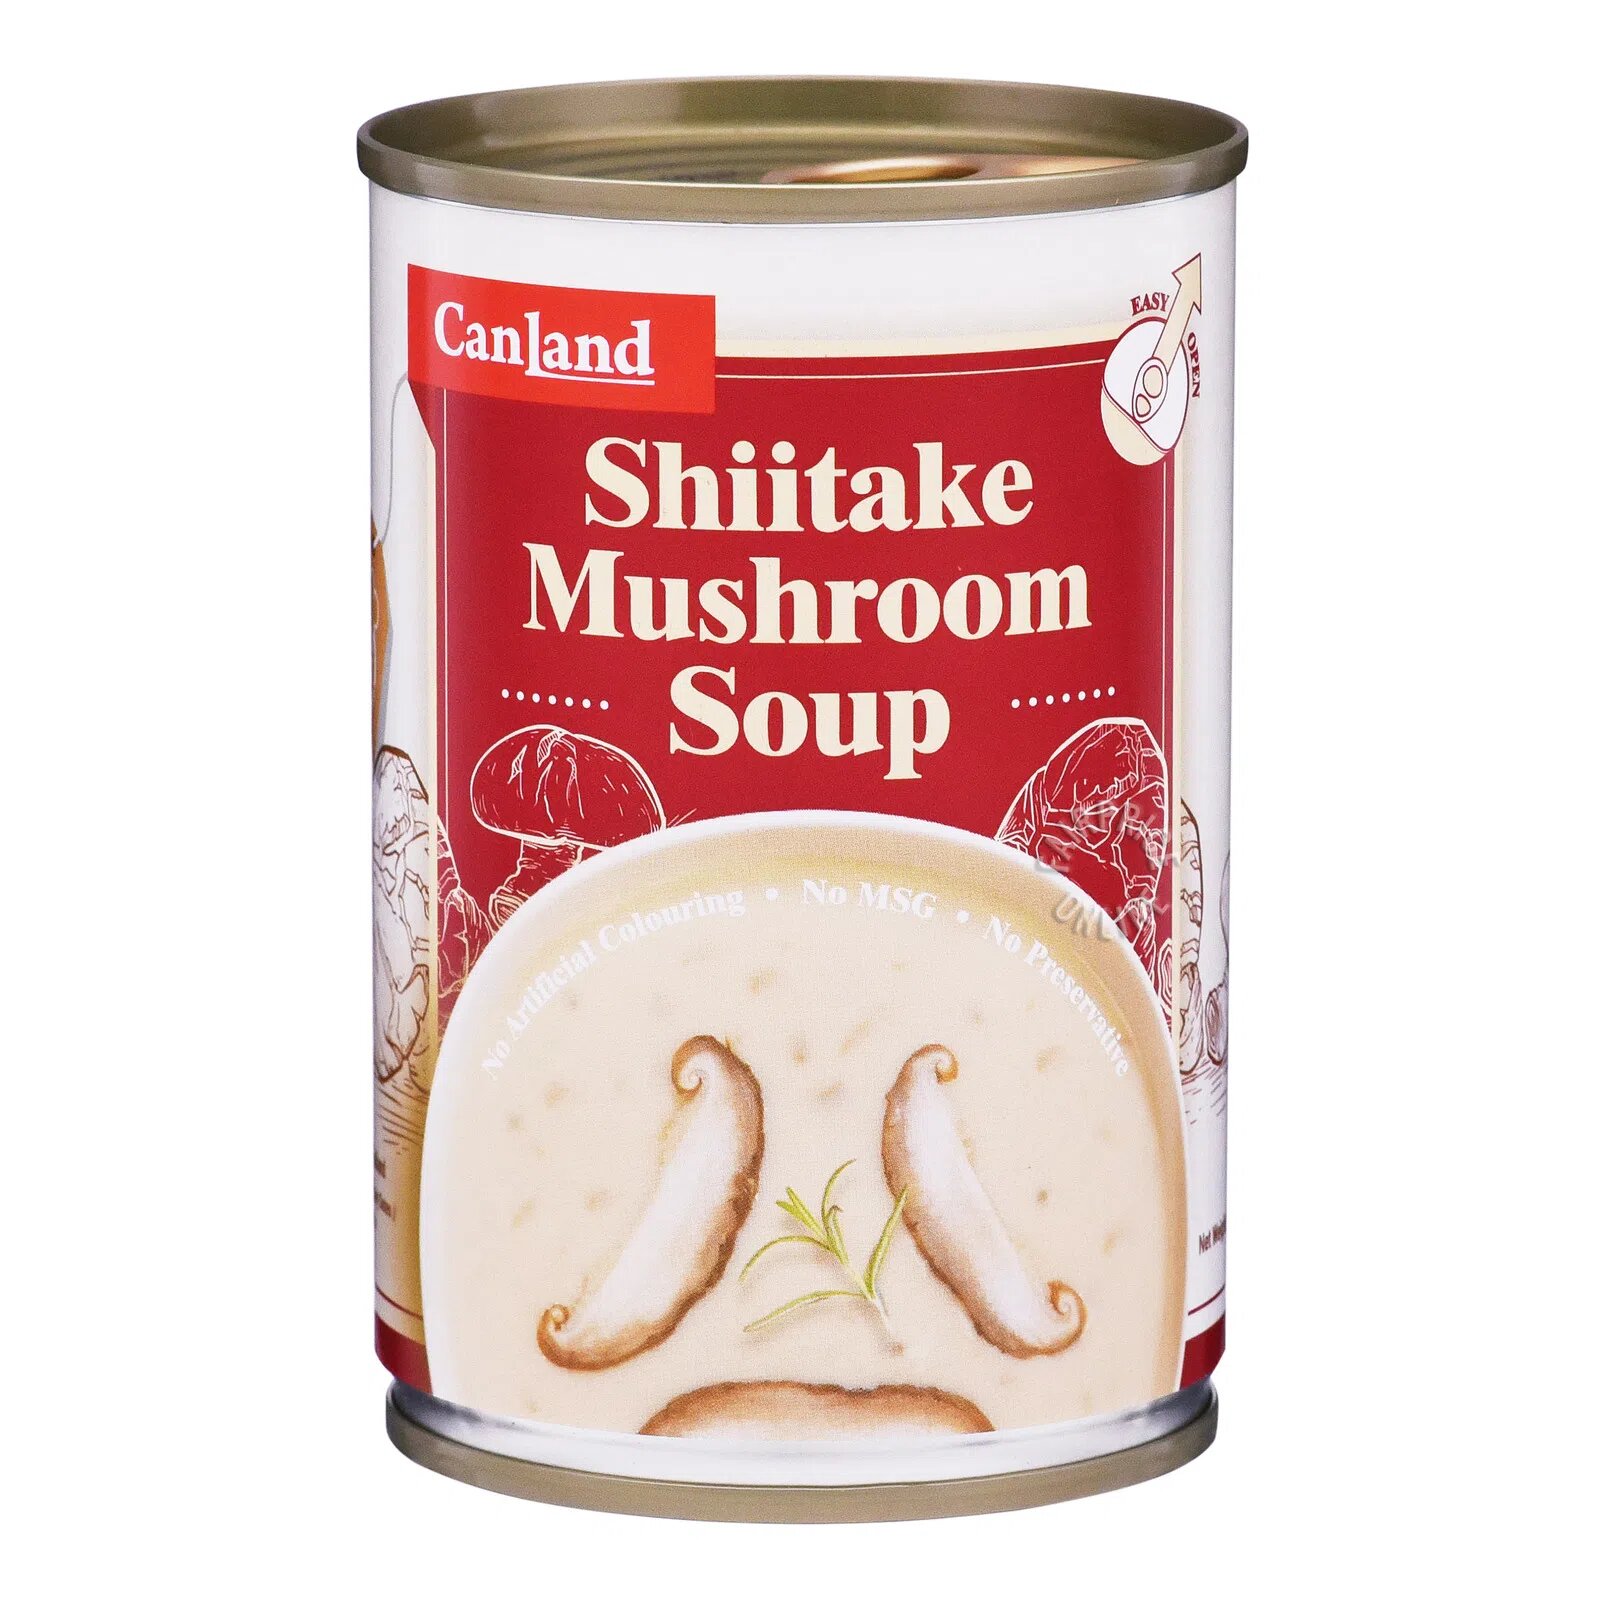 Canland Canned Soup - Shiitake Mushroom